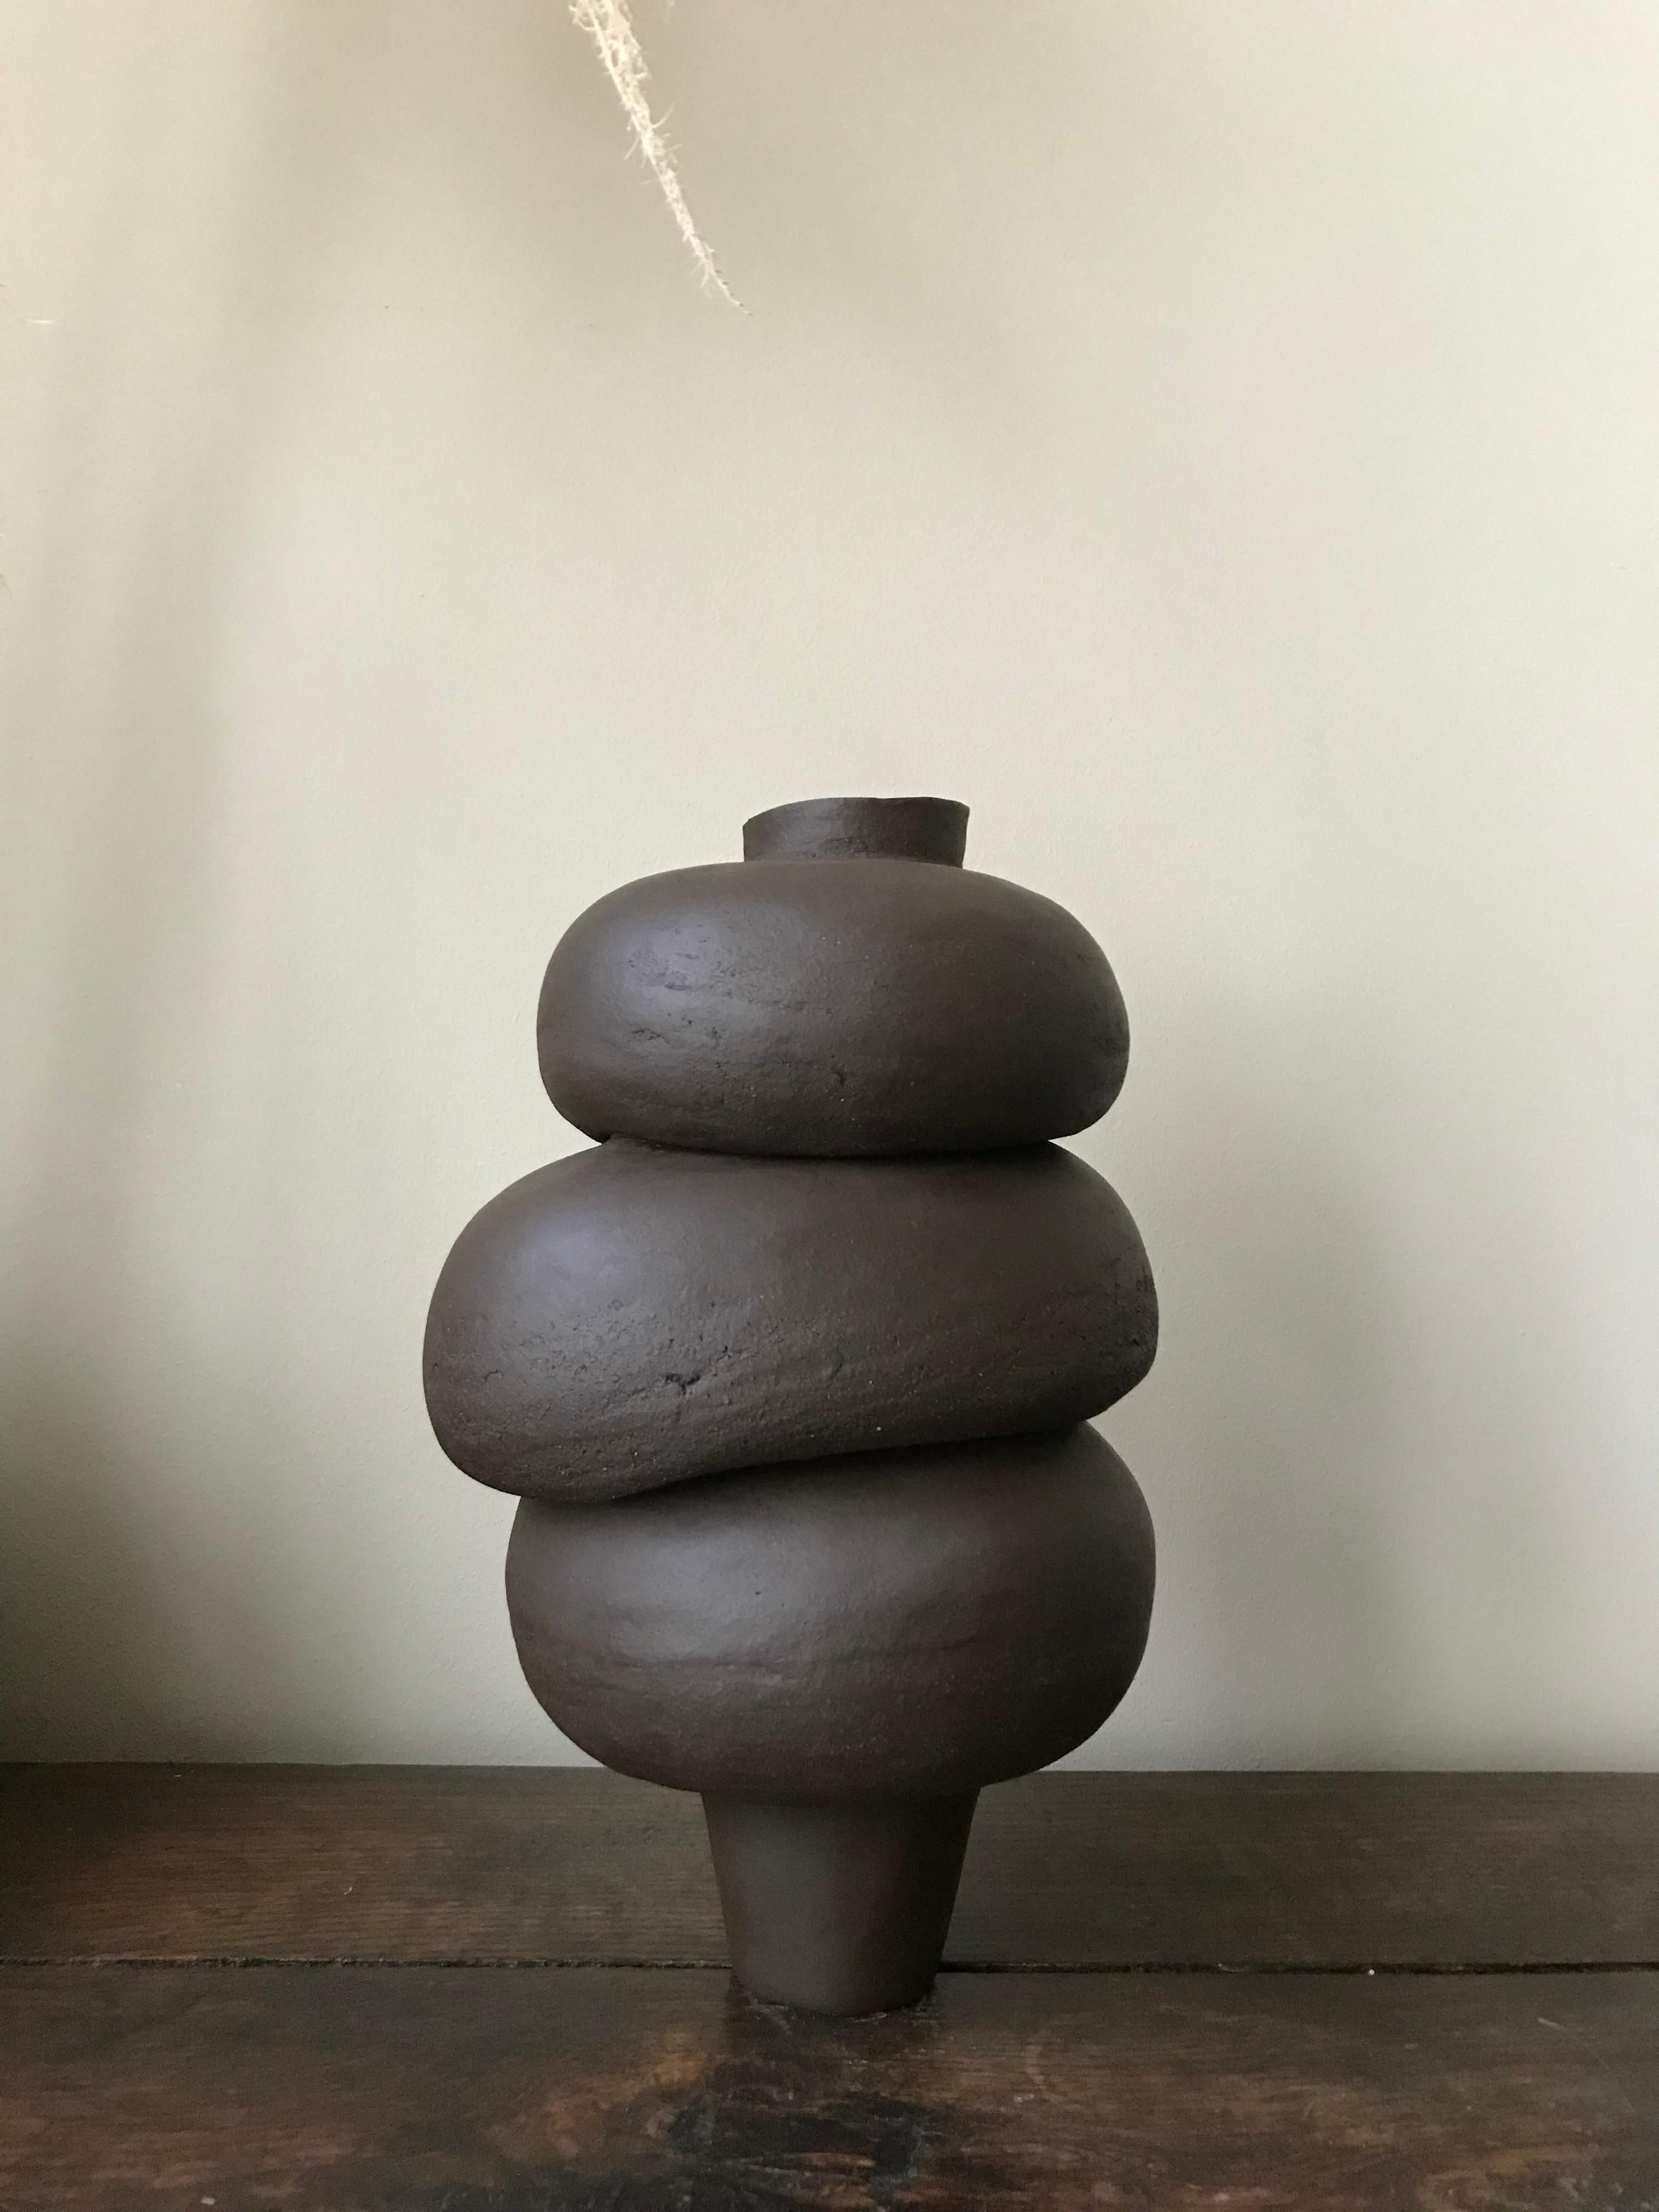 Jedes der keramischen Stücke von Françoise Jeffrey ist handgefertigt, auf einer Spule aufgebaut, organisch geformt und auf seine eigene Weise einzigartig, wodurch ein grundlegendes und zeitloses Design entsteht. Perfekt unvollkommen, inspiriert von